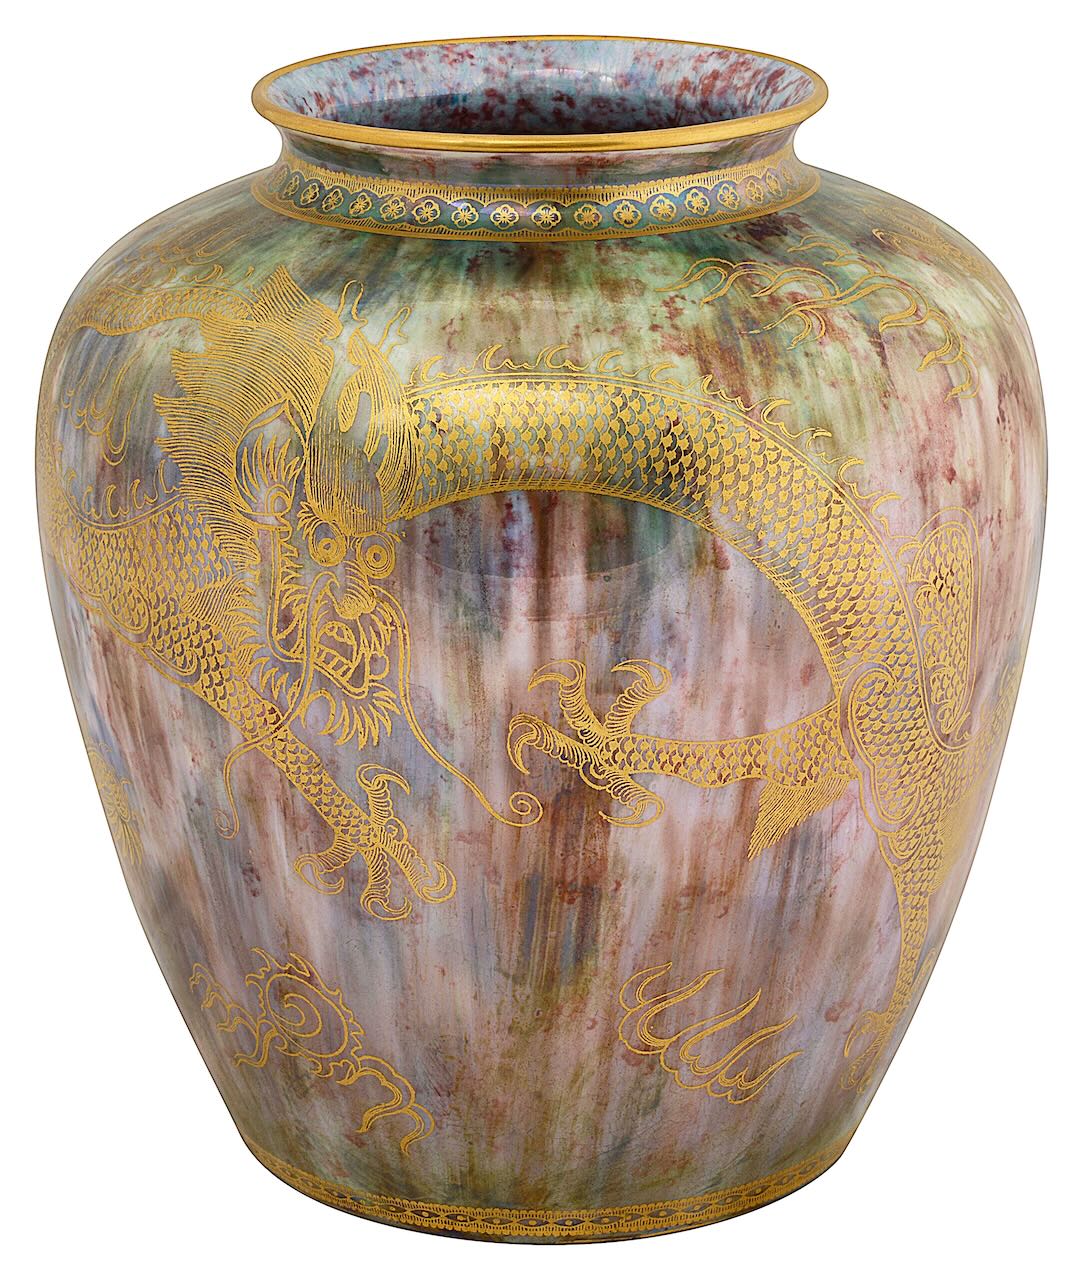 Daisy Makeig-Jones for Wedgwood lustre a 'Dragon' lustre vase, Z4901